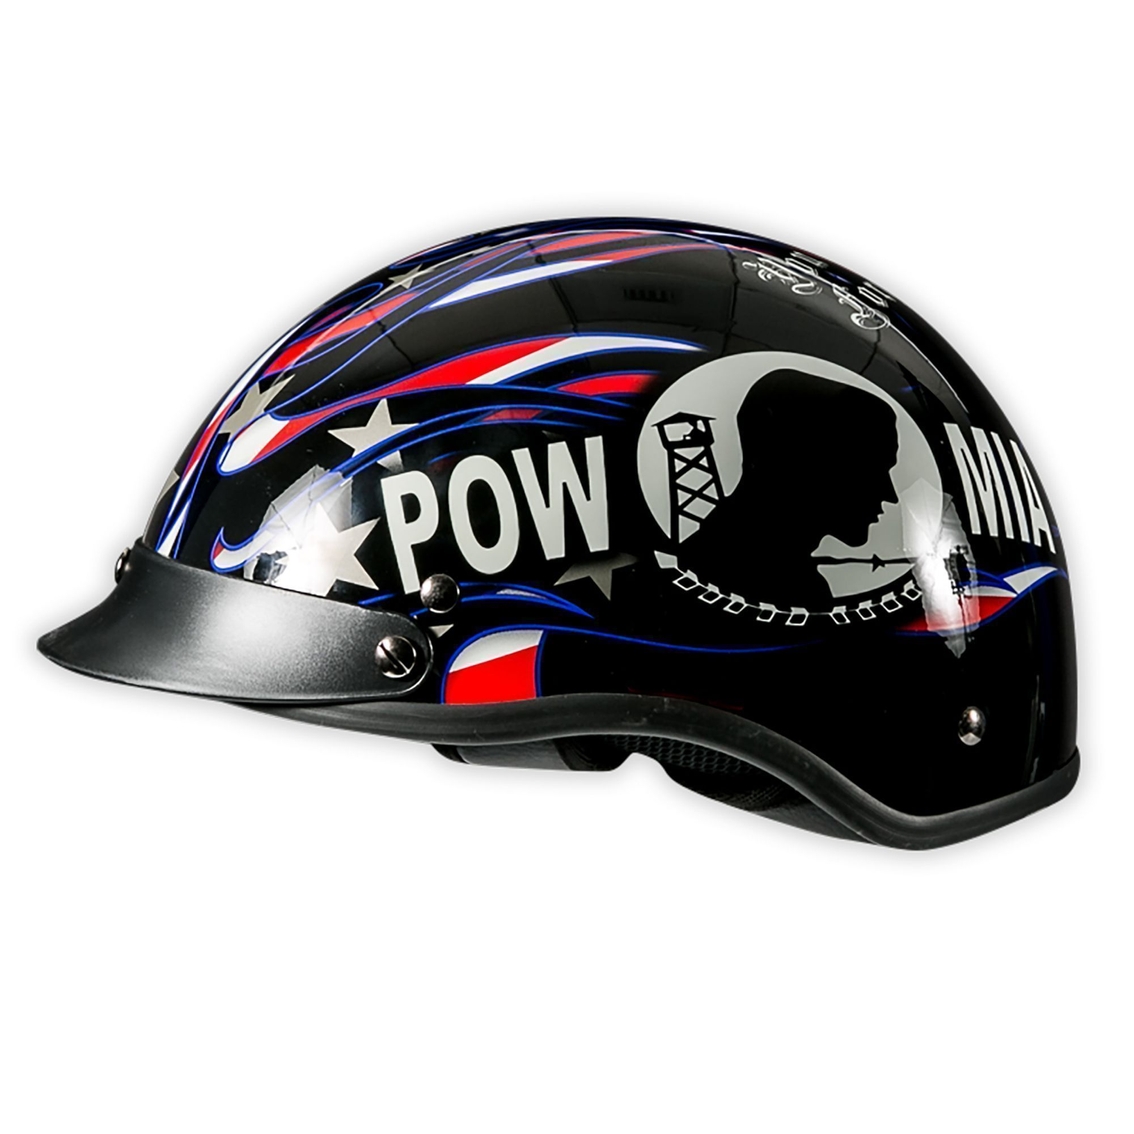 POW MIA Motorcycle Helmet - Image 2 of 2